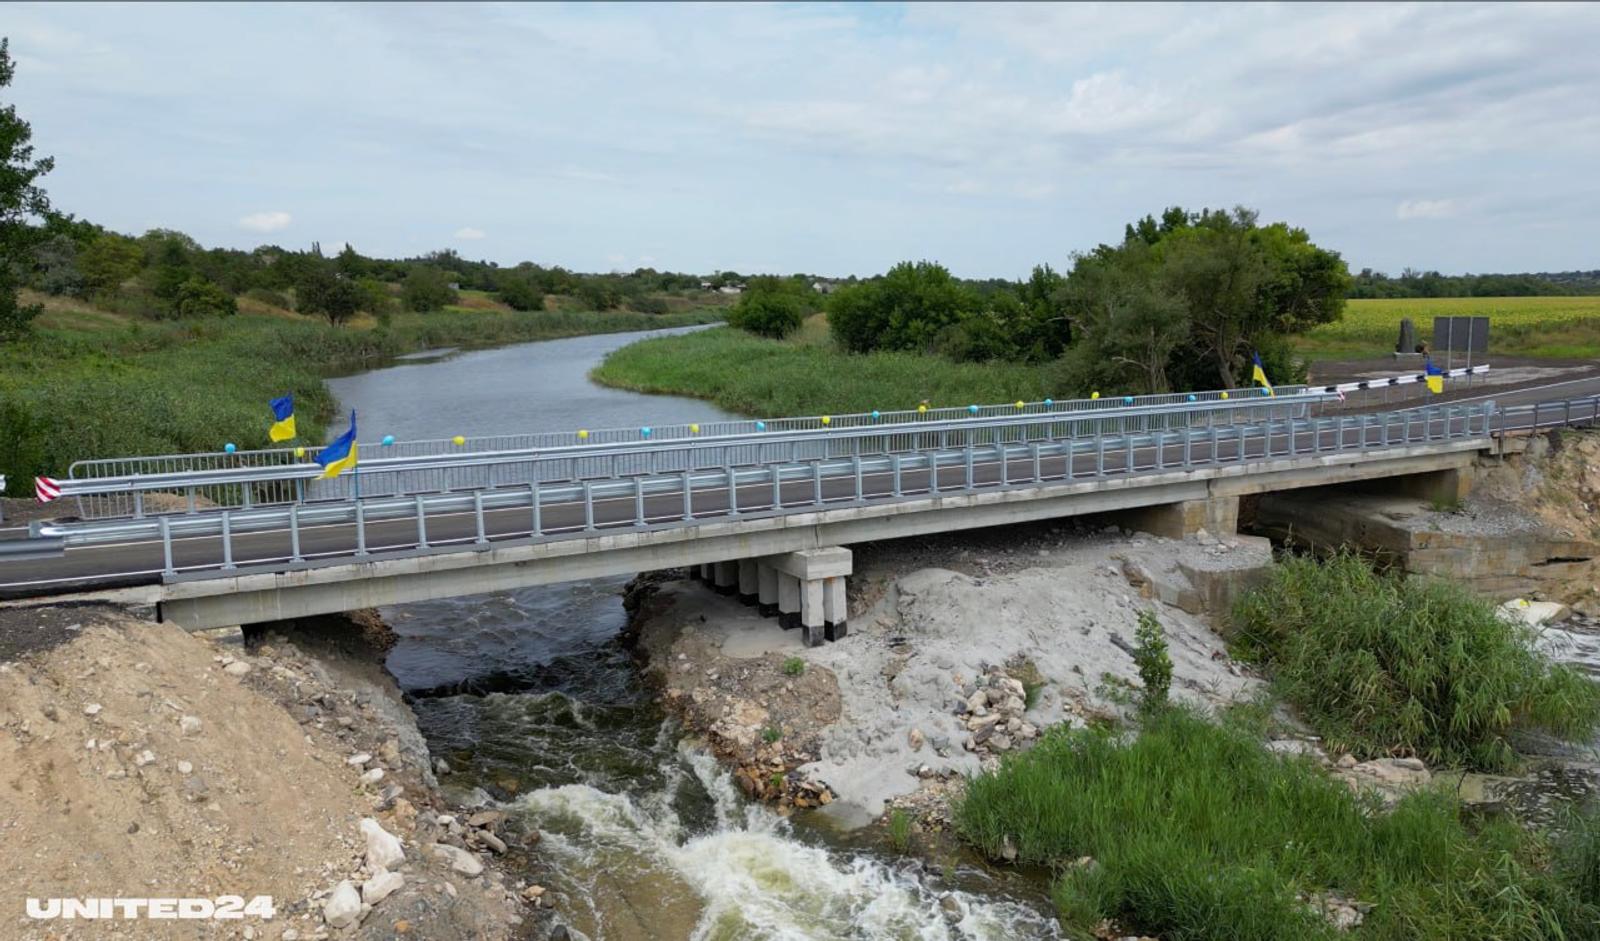 Ще один міст через річку Інгулець побудували на кошти донорів UNITED24